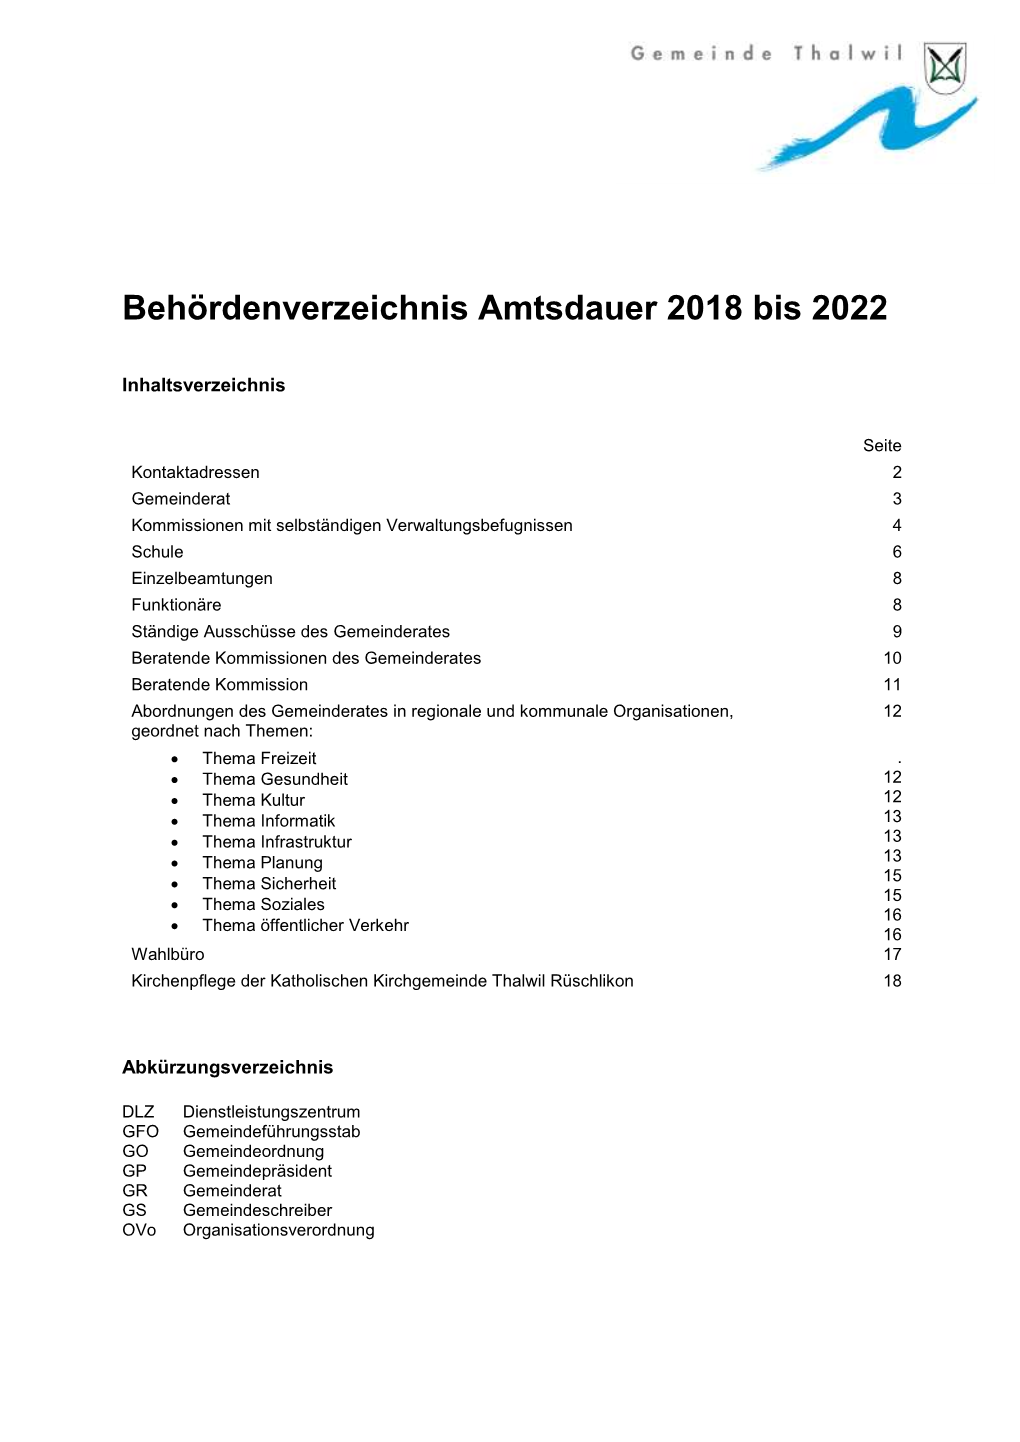 Behördenverzeichnis Amtsdauer 2018 Bis 2022